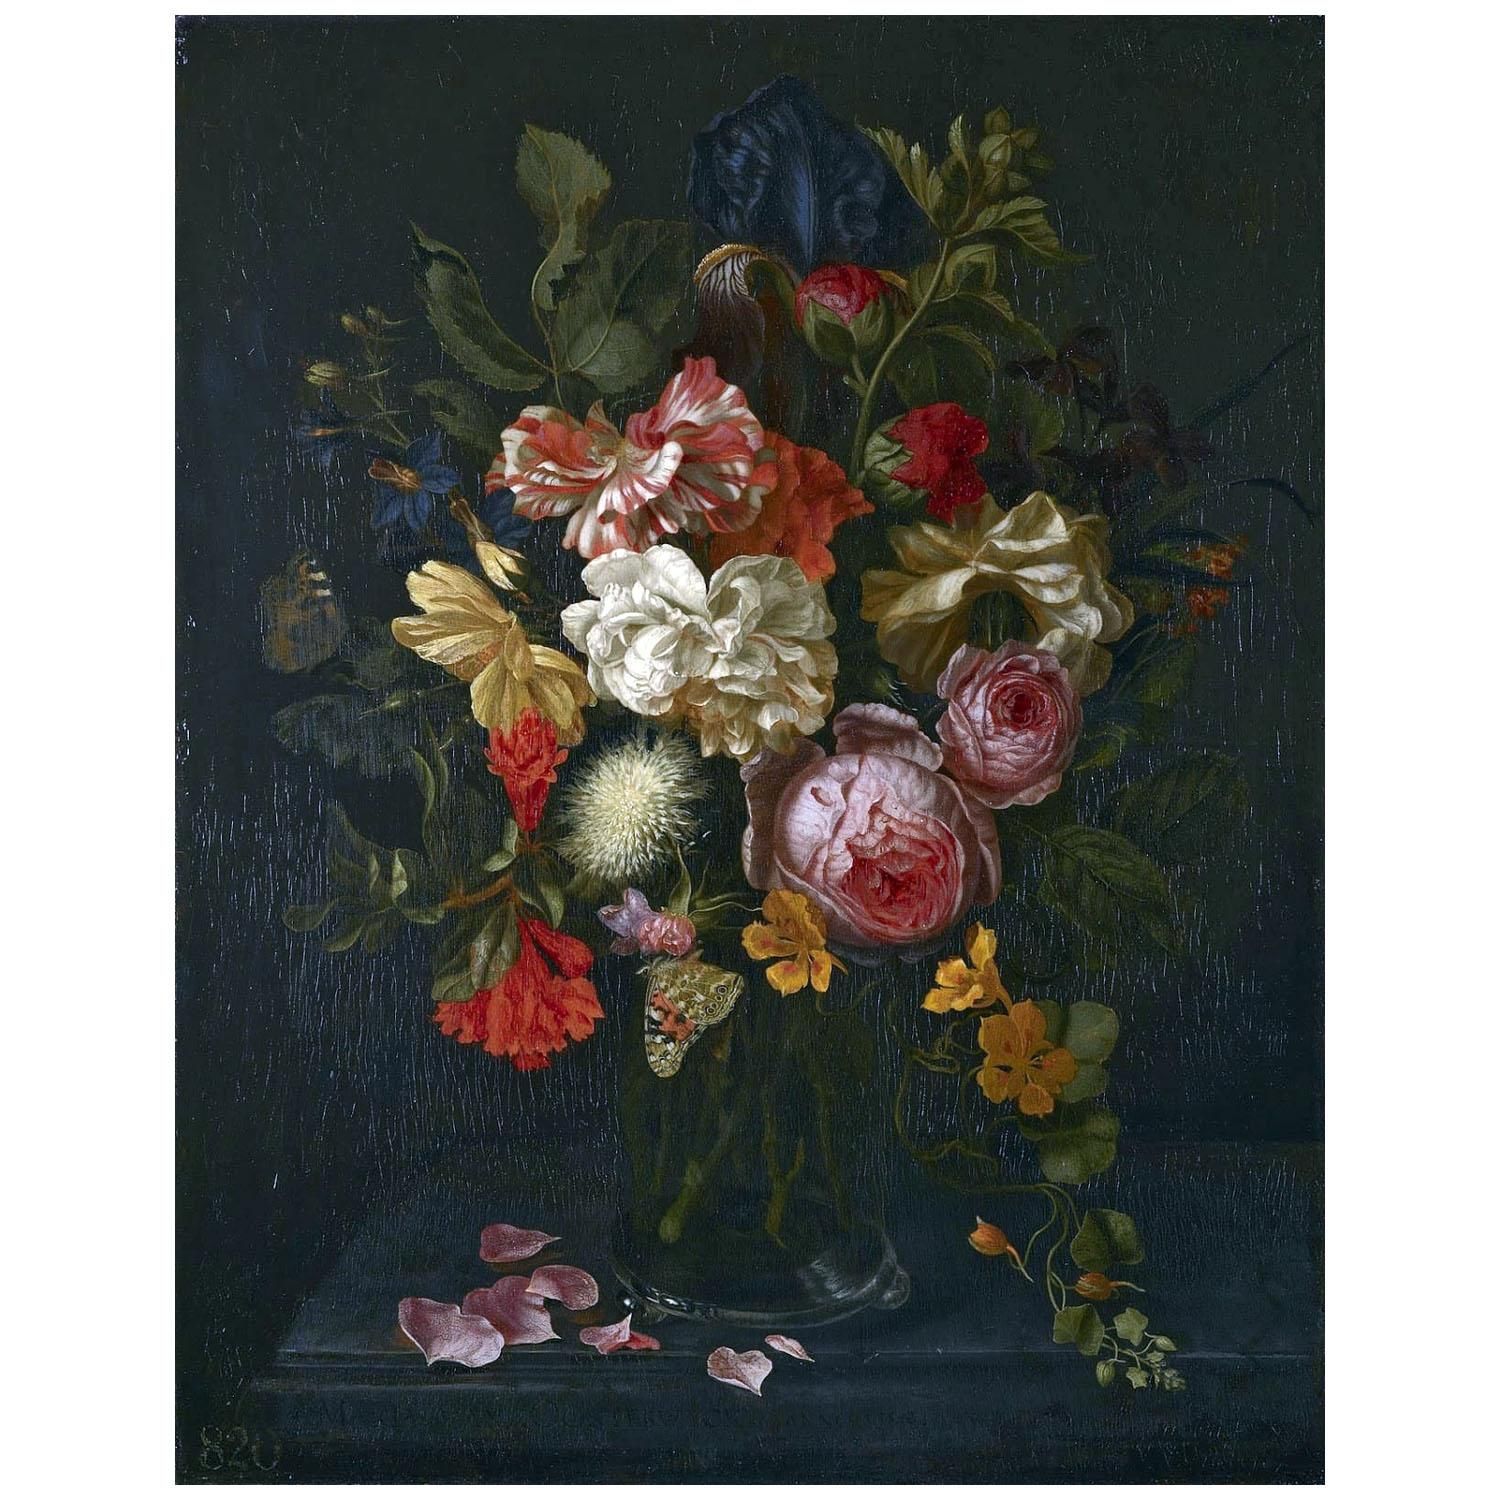 Maria van Oosterwijck. Flowers and Butterflies. 1686. Hampton Court London